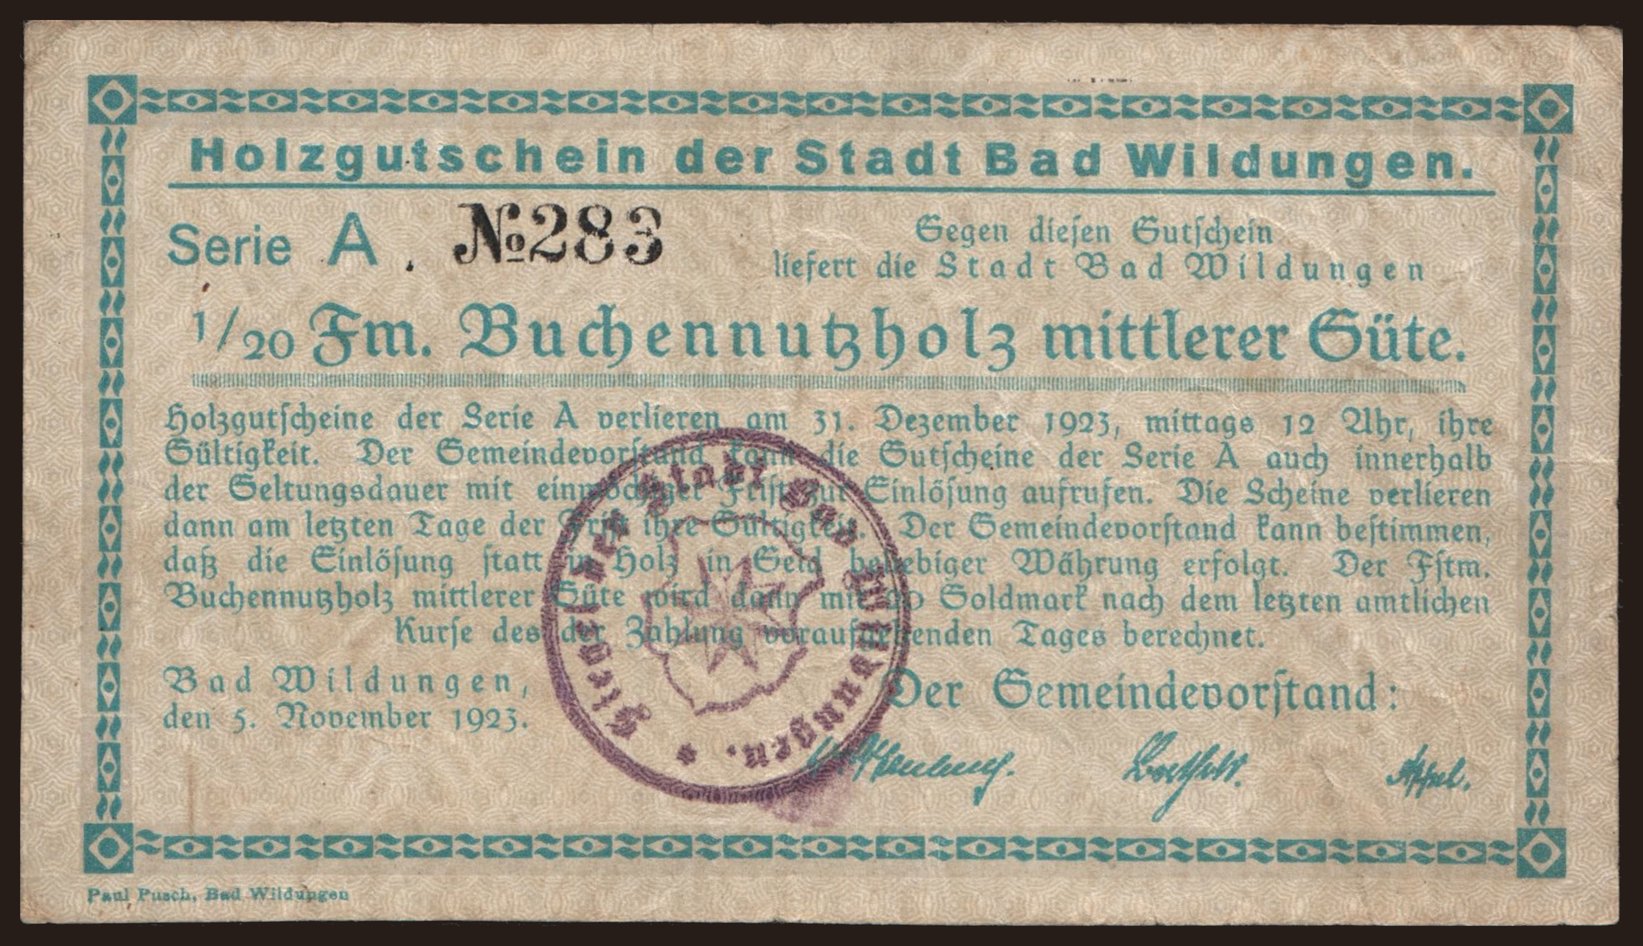 Bad Wildungen/ Stadt, 1/20 Festmeter Buchennutzholz, 1923